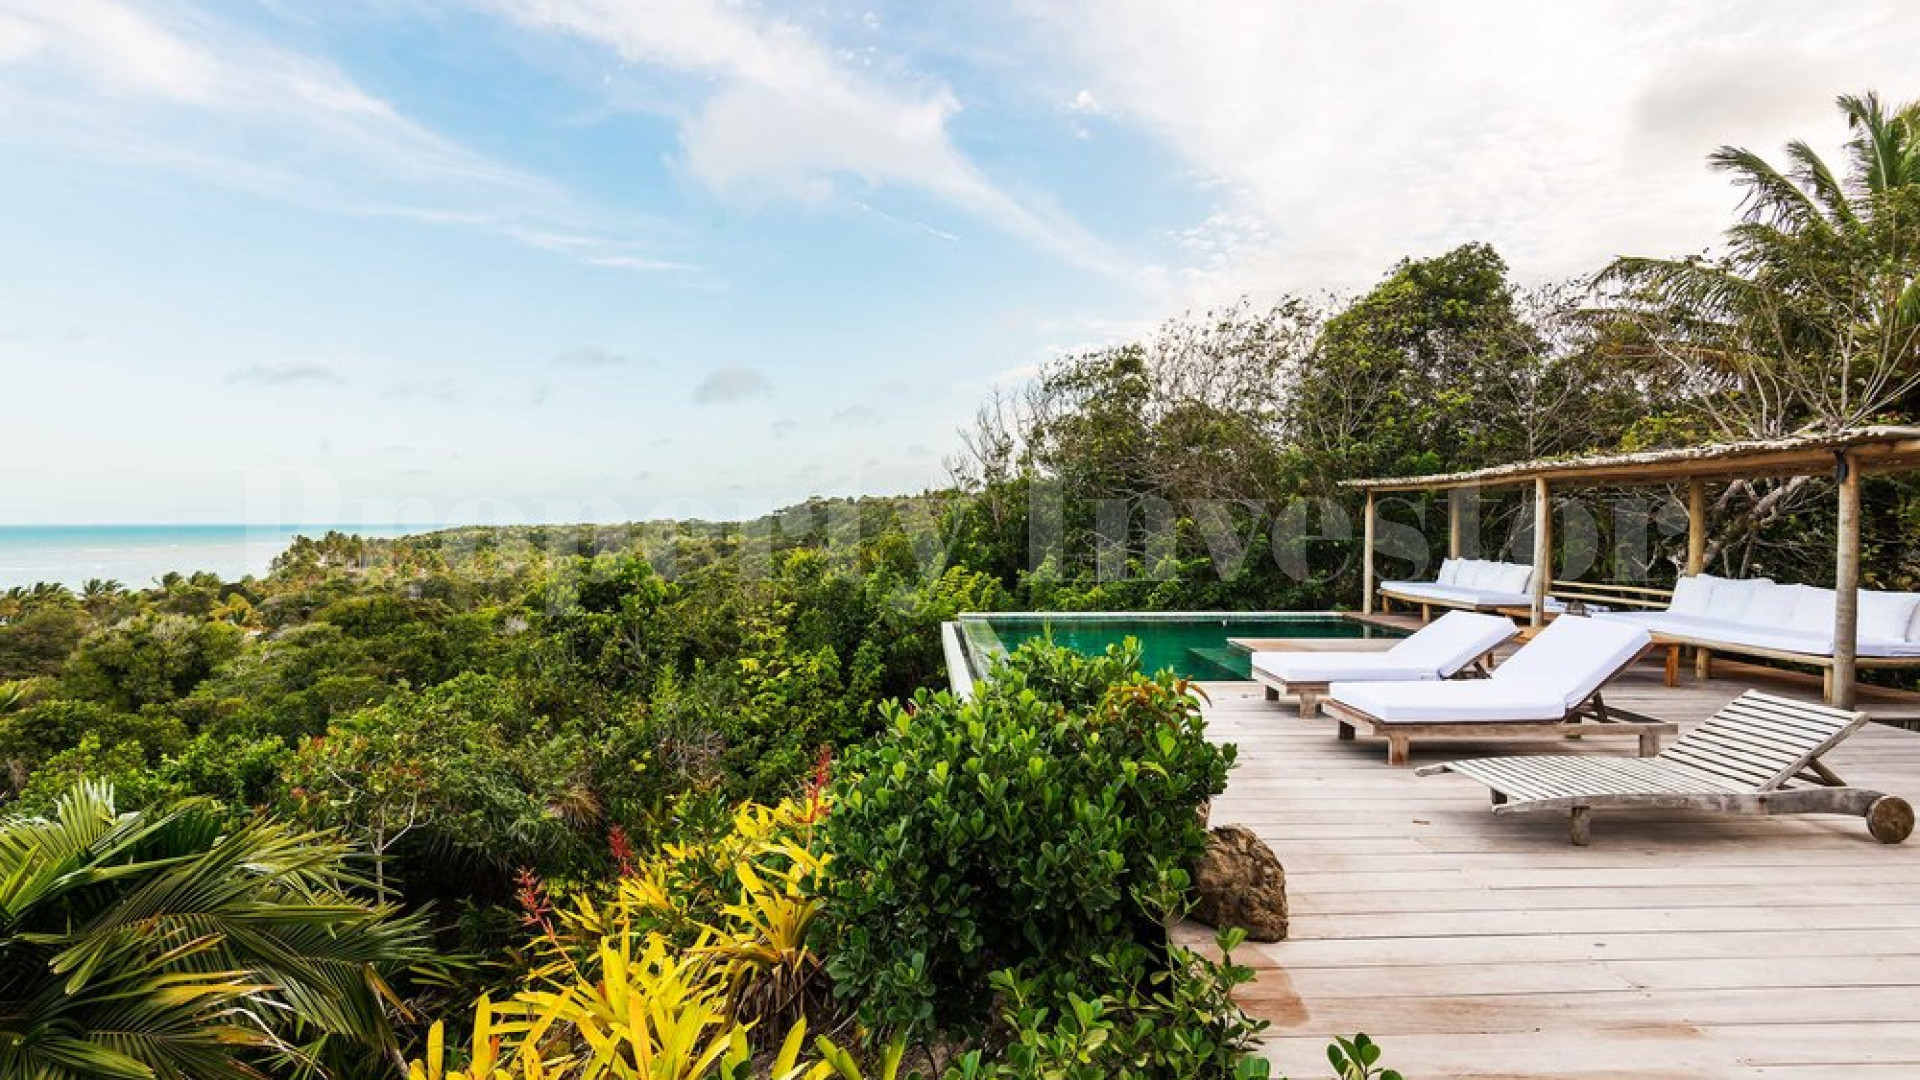 Продаётся превосходная вилла в джунглях у океана с 4 спальнями в Транкозо, Бразилия